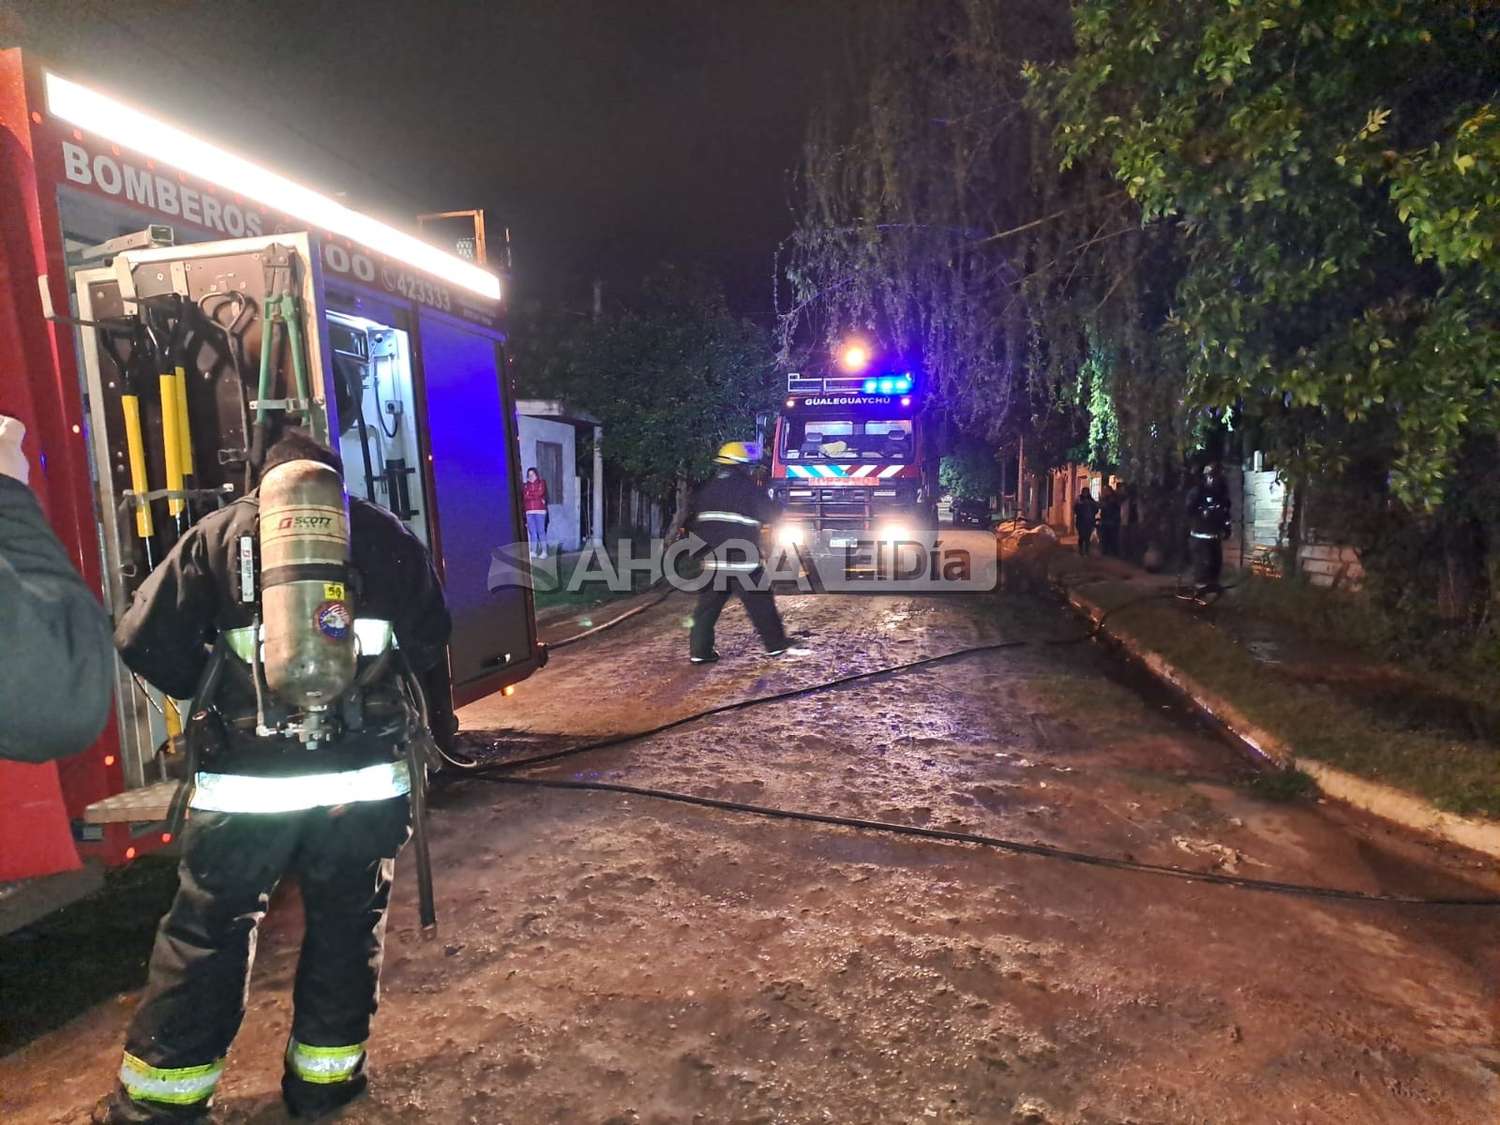 Tristes imágenes: Se incendiaron dos precarias viviendas en Gualeguaychú